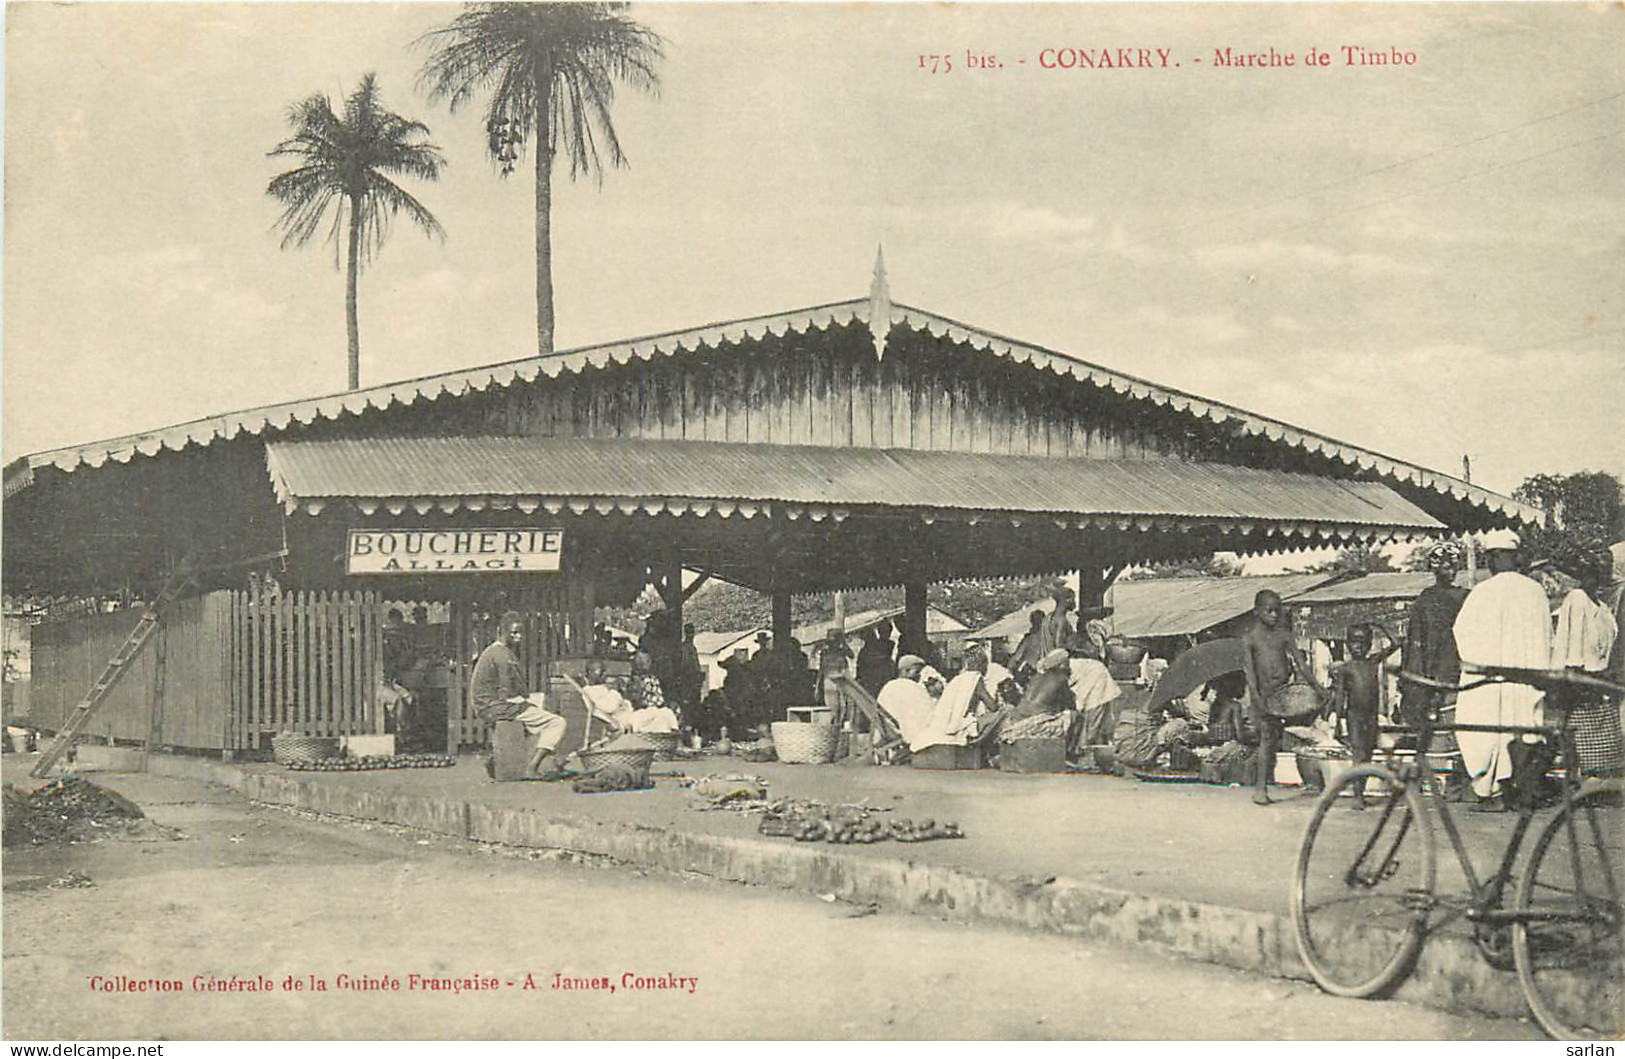  AOF , GUINEE FRANCAISE , CONAKRY , Marché De Timbo ,  * 299 77 - Guinée Française